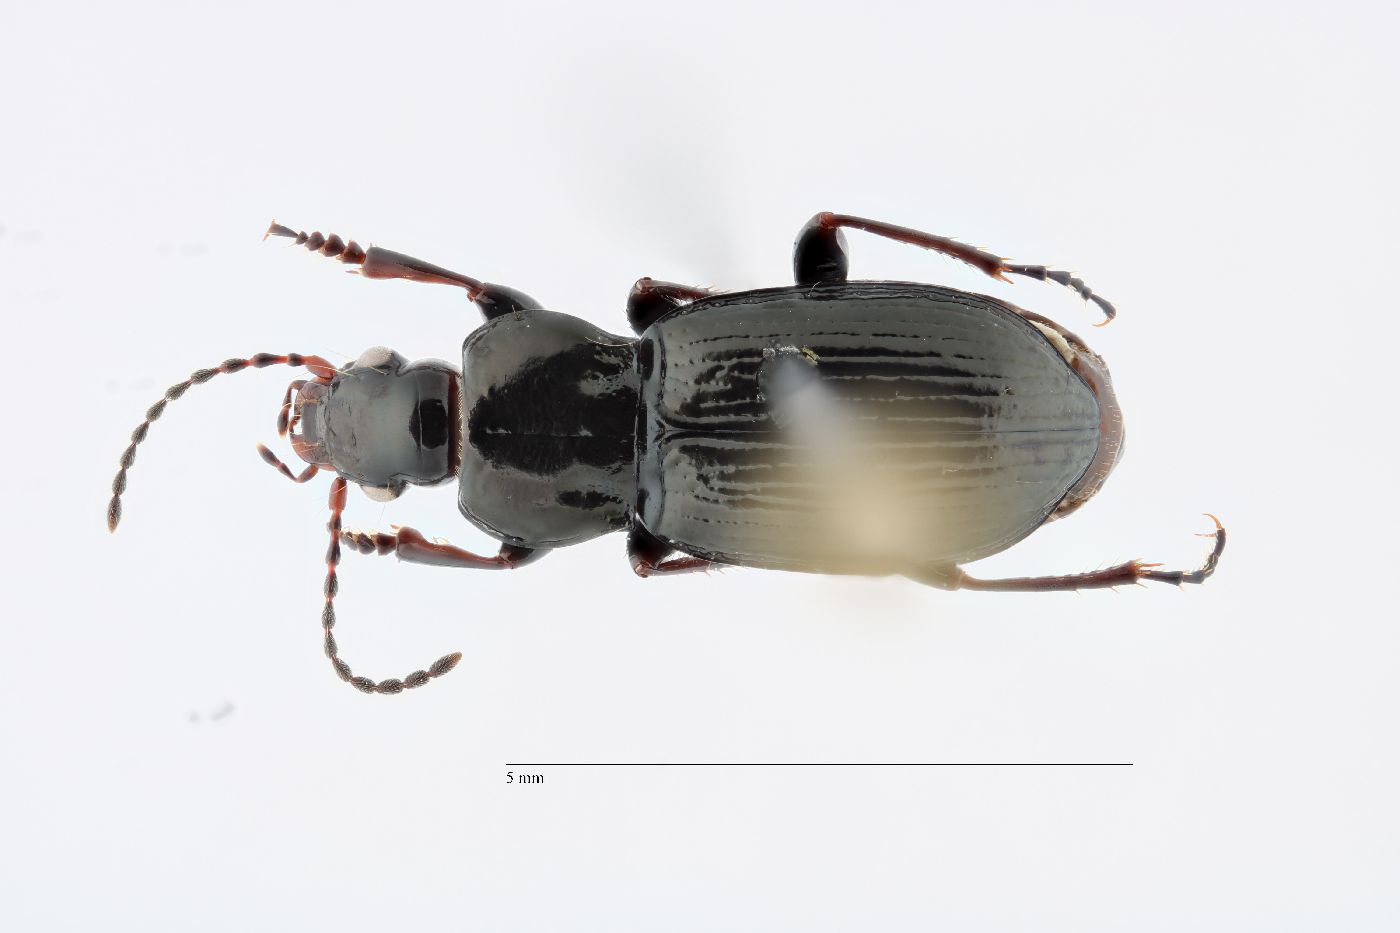 Pterostichus (Criobius) image